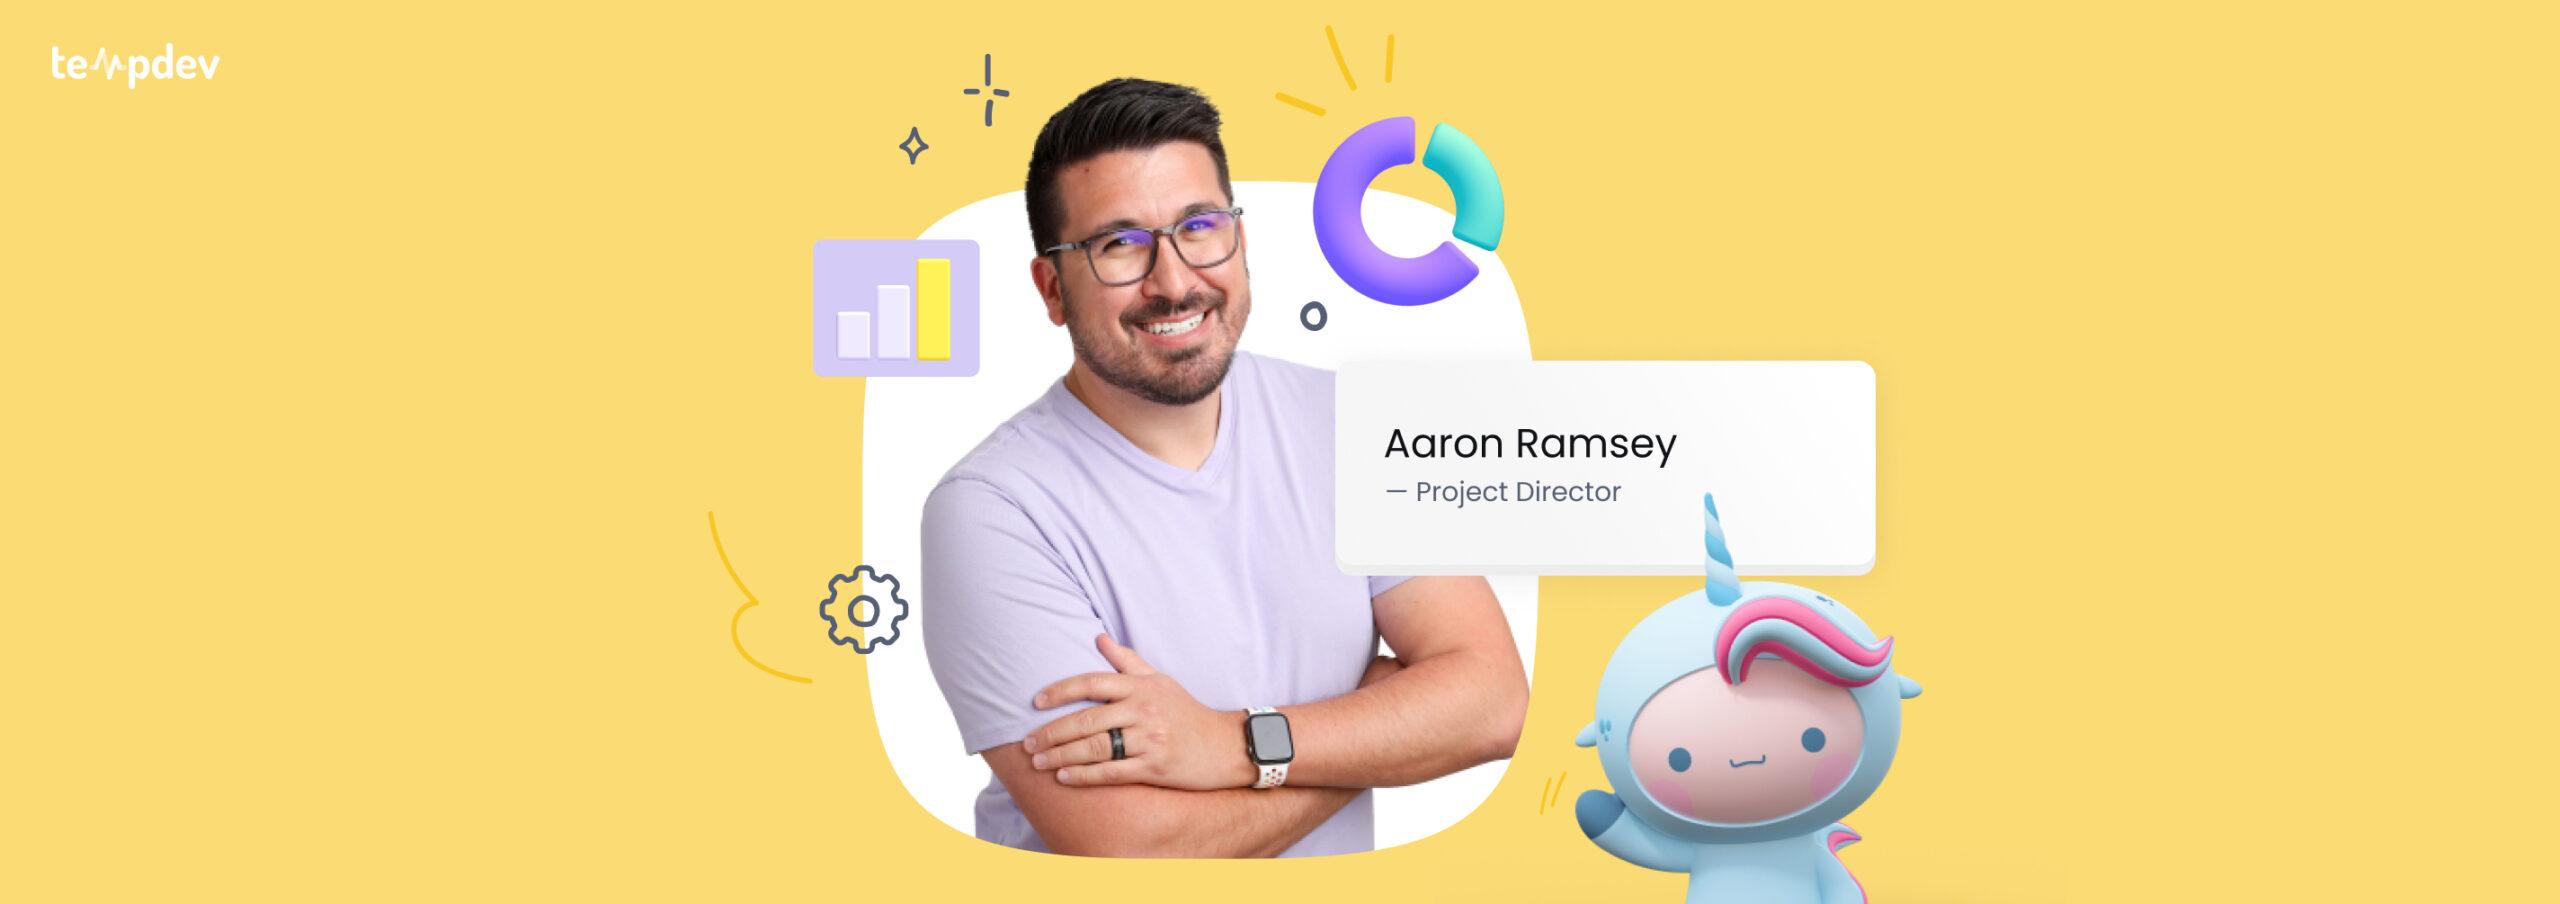 Meet Aaron Ramsey: NextGen Director of PMO